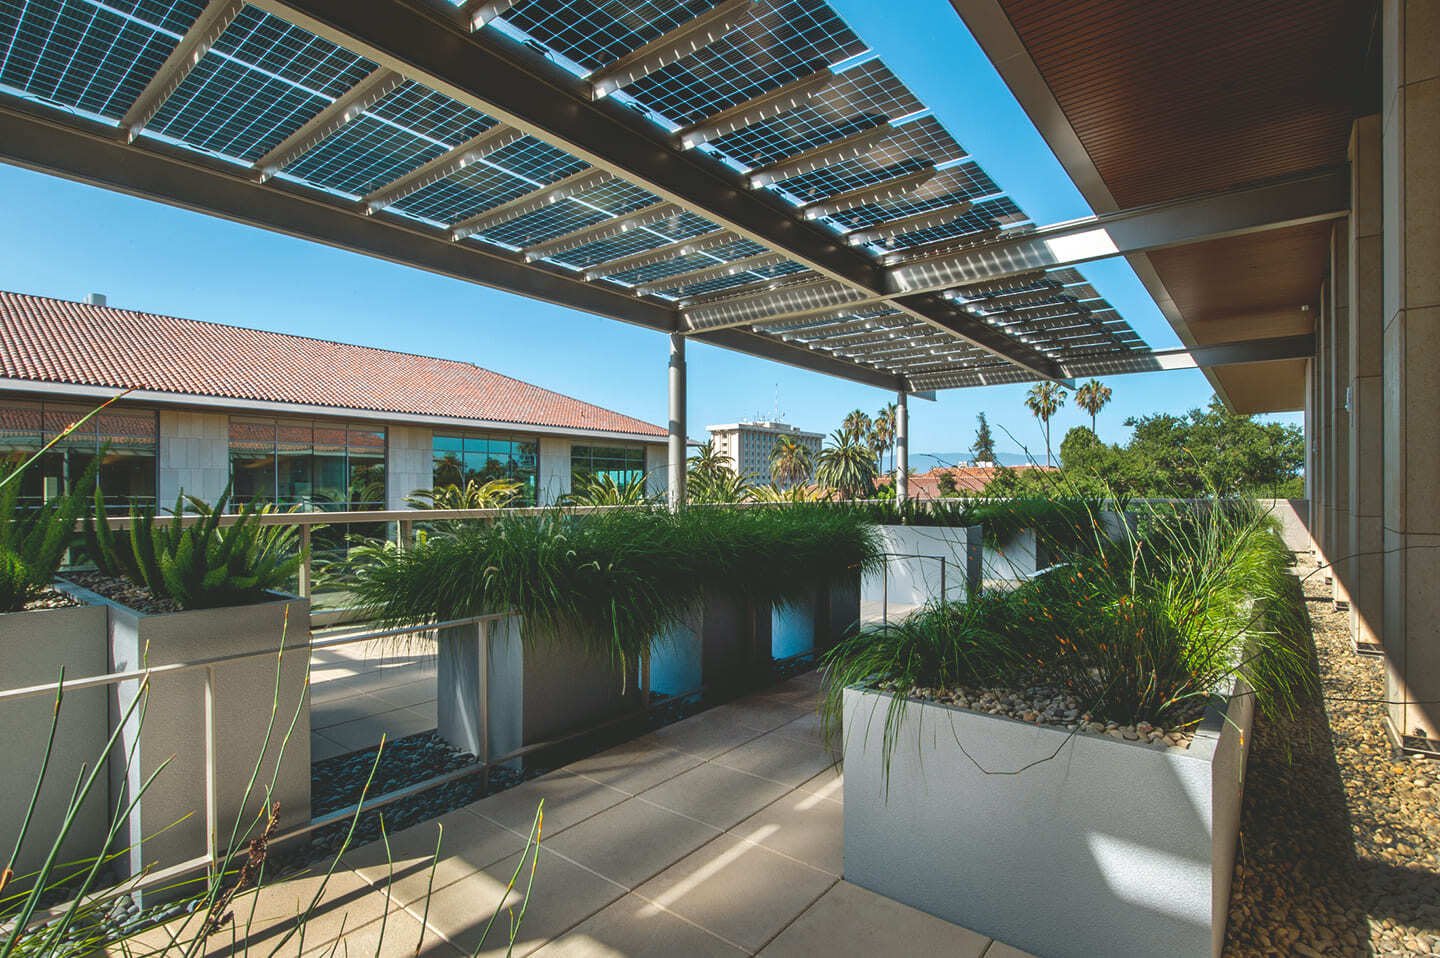 Eine Überdachung für die Terrasse besteht aus halbtransparenten Solarpanels, die auf einer begrünten Terrasse Schatten spenden.